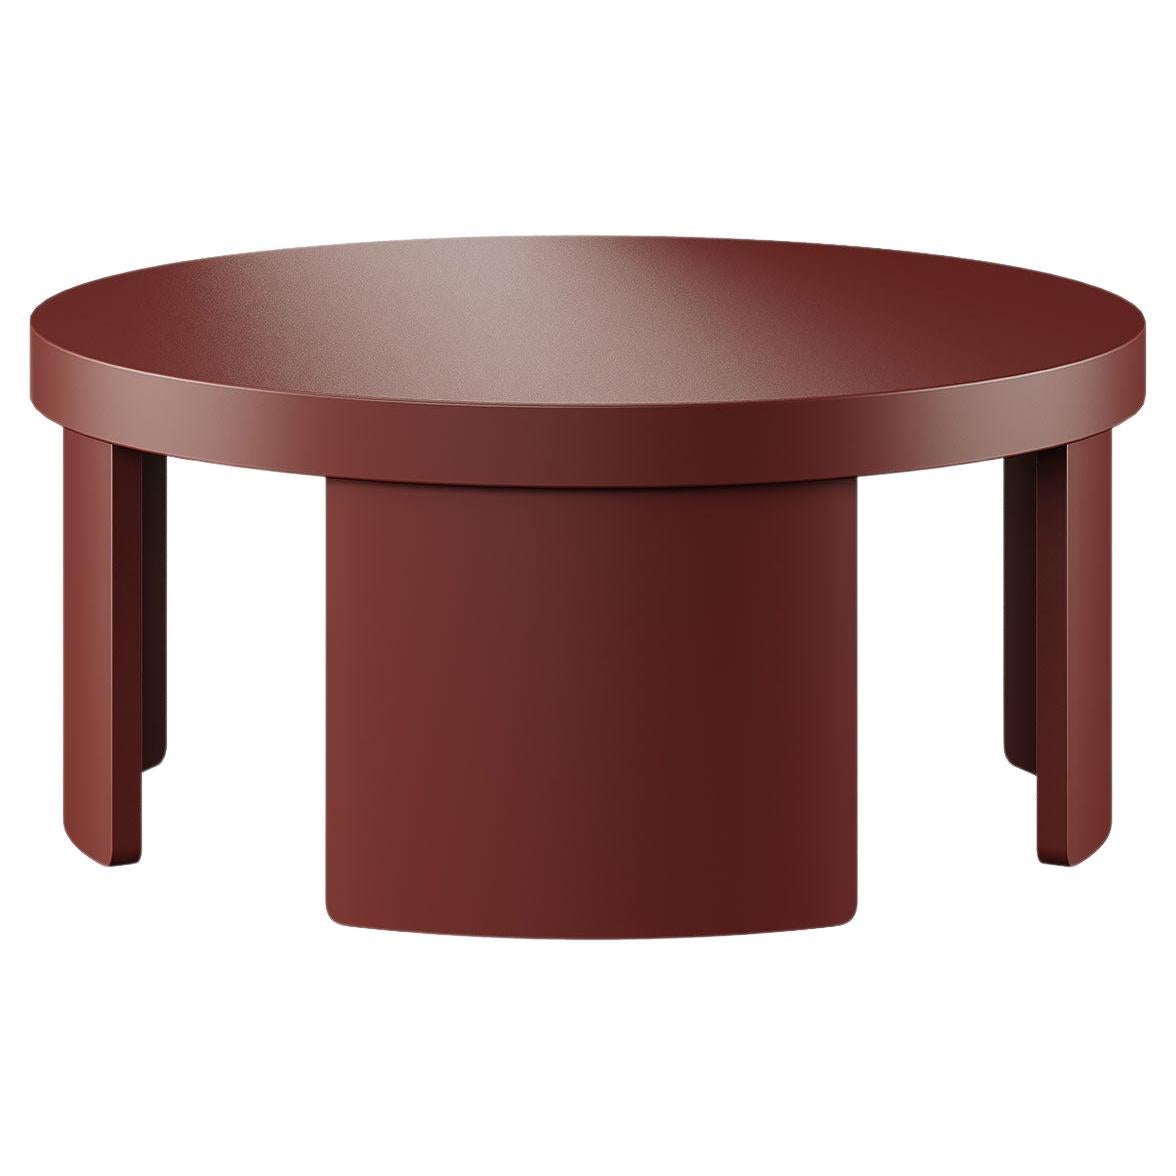 Table basse ronde moderne du milieu du siècle, laquée rouge foncé, brun mat